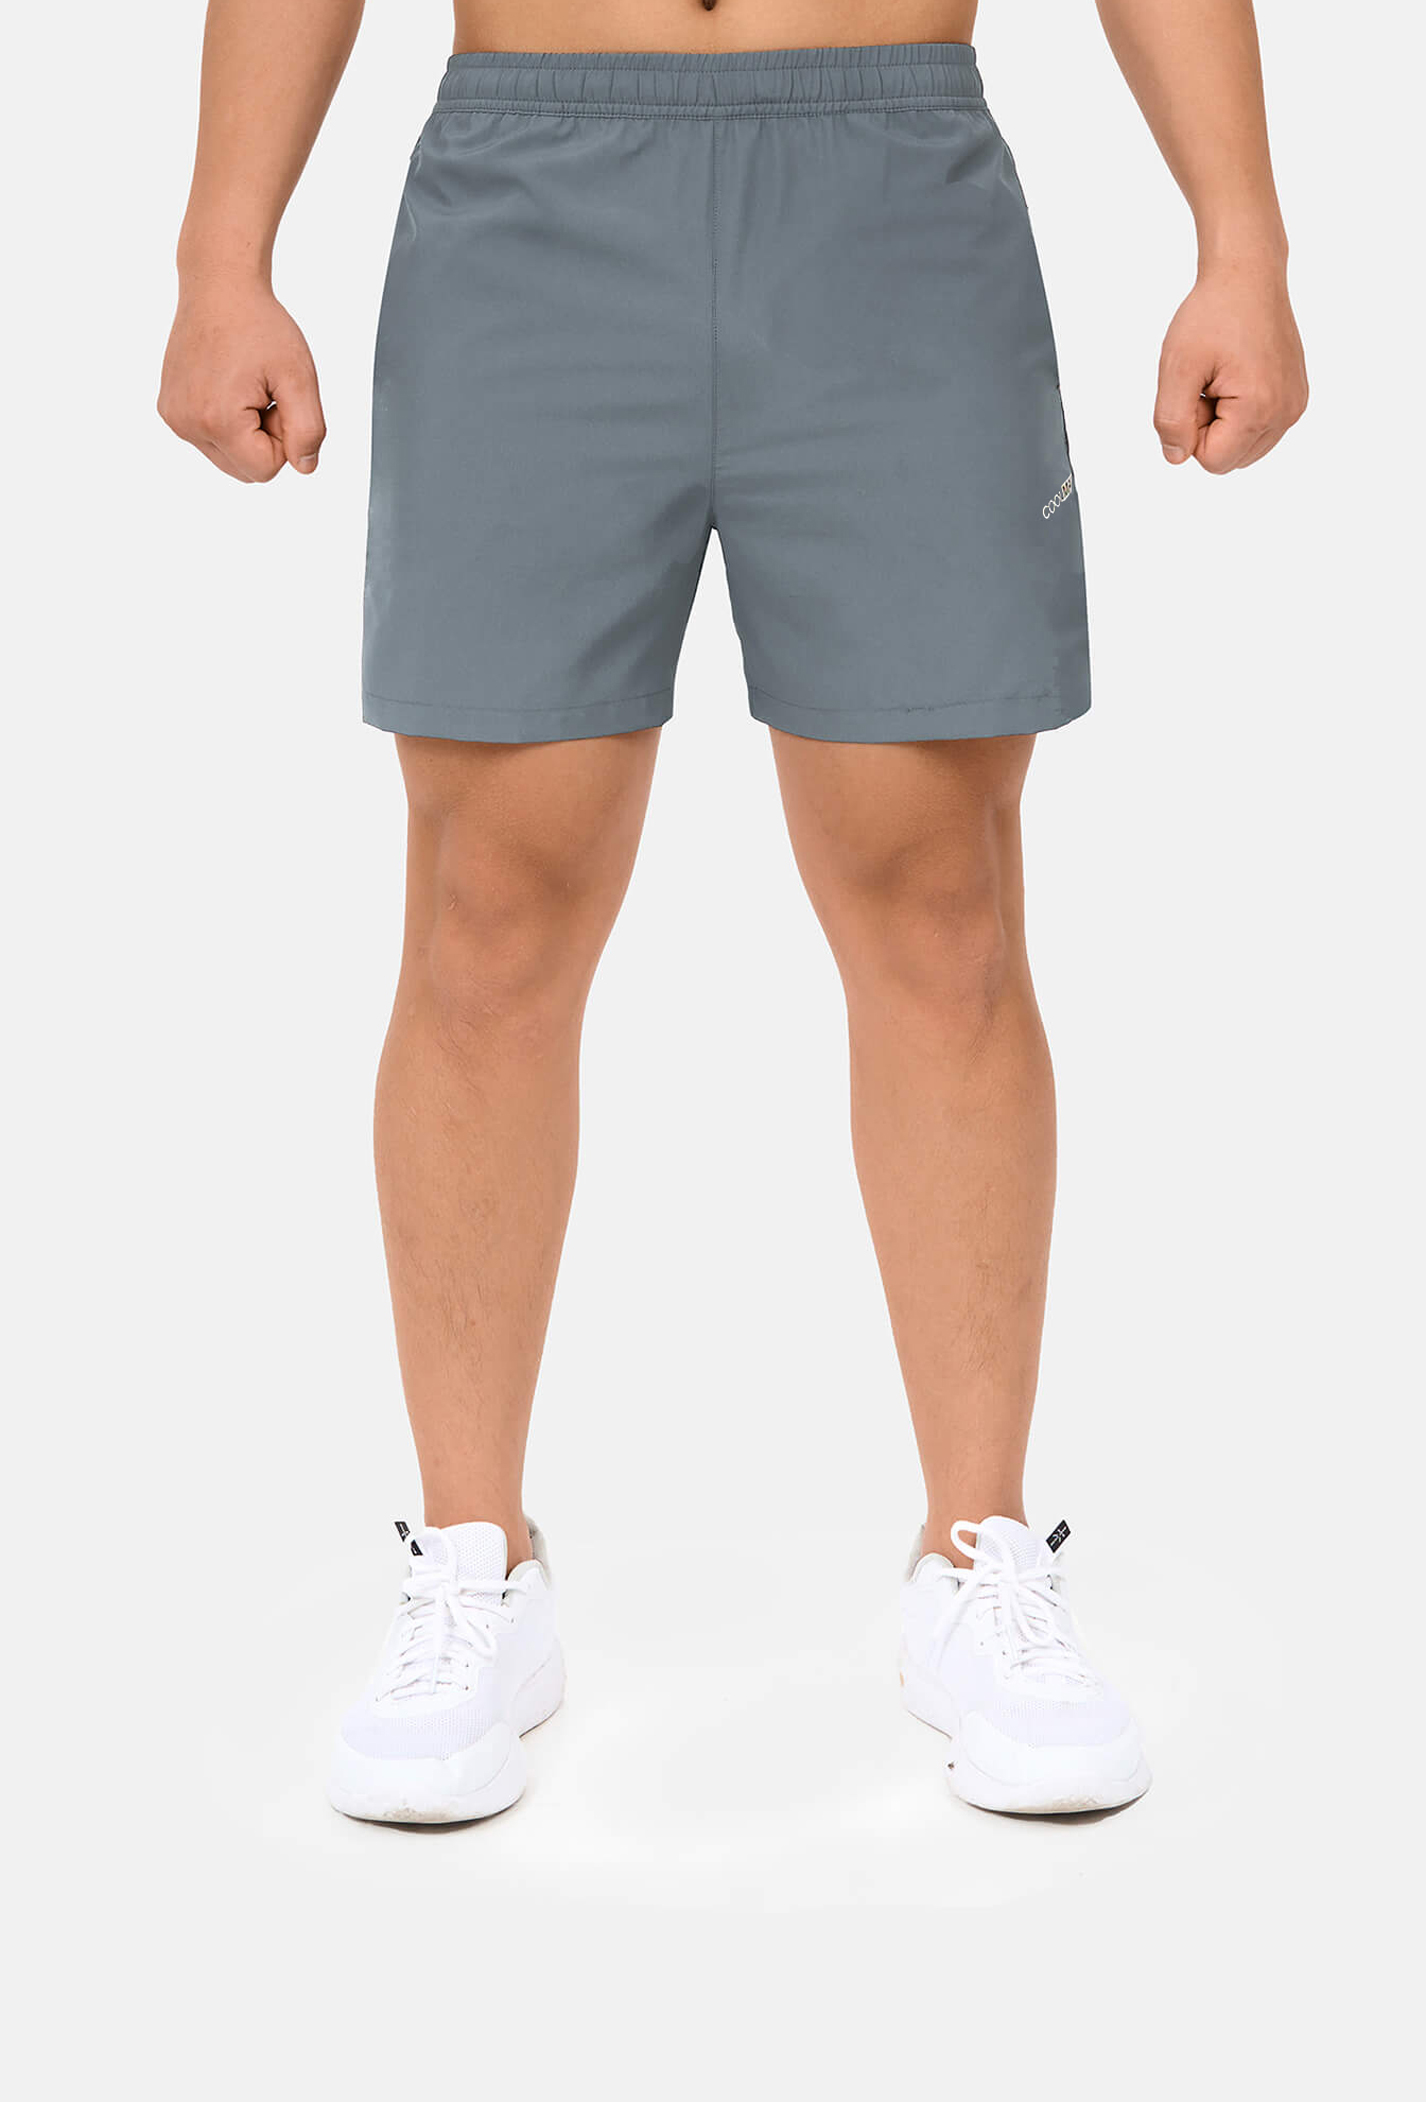 Outlet - Quần shorts nam thể thao 5" xẻ gấu cao (túi sau có khóa kéo) Xám xanh